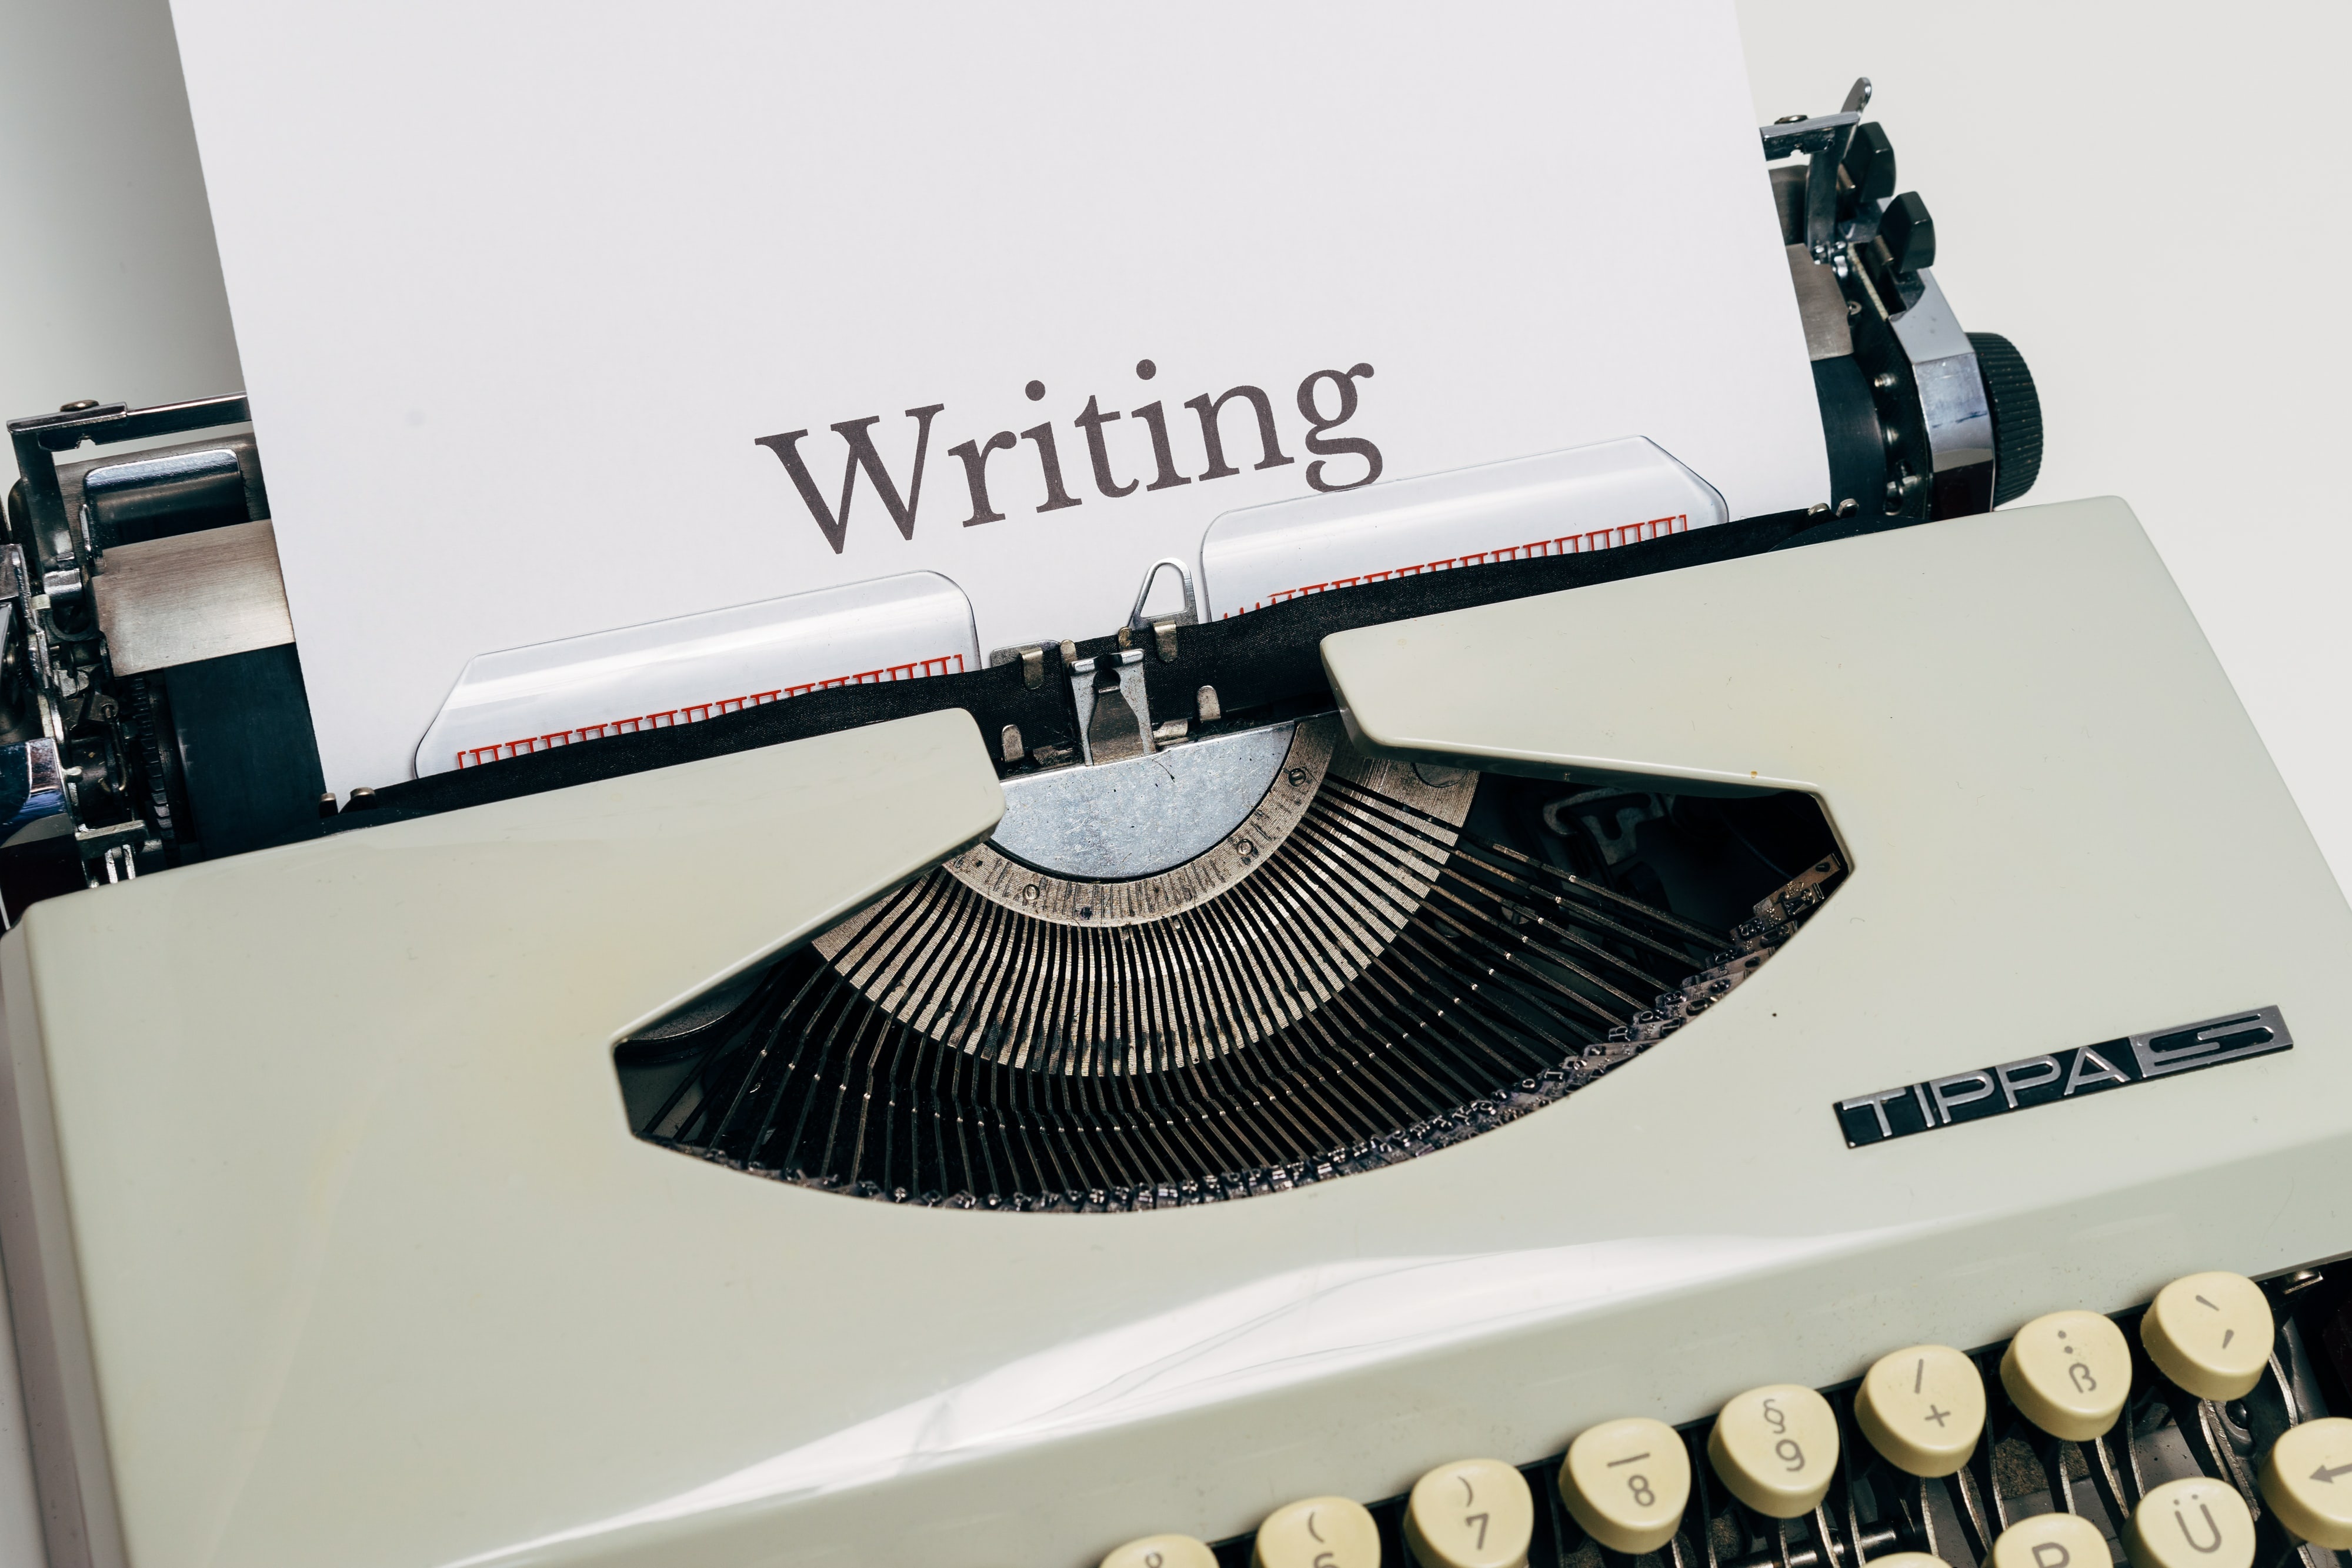 Gammel skrivemaskin, hvor det er ark det står Writing på (skrive på norsk).